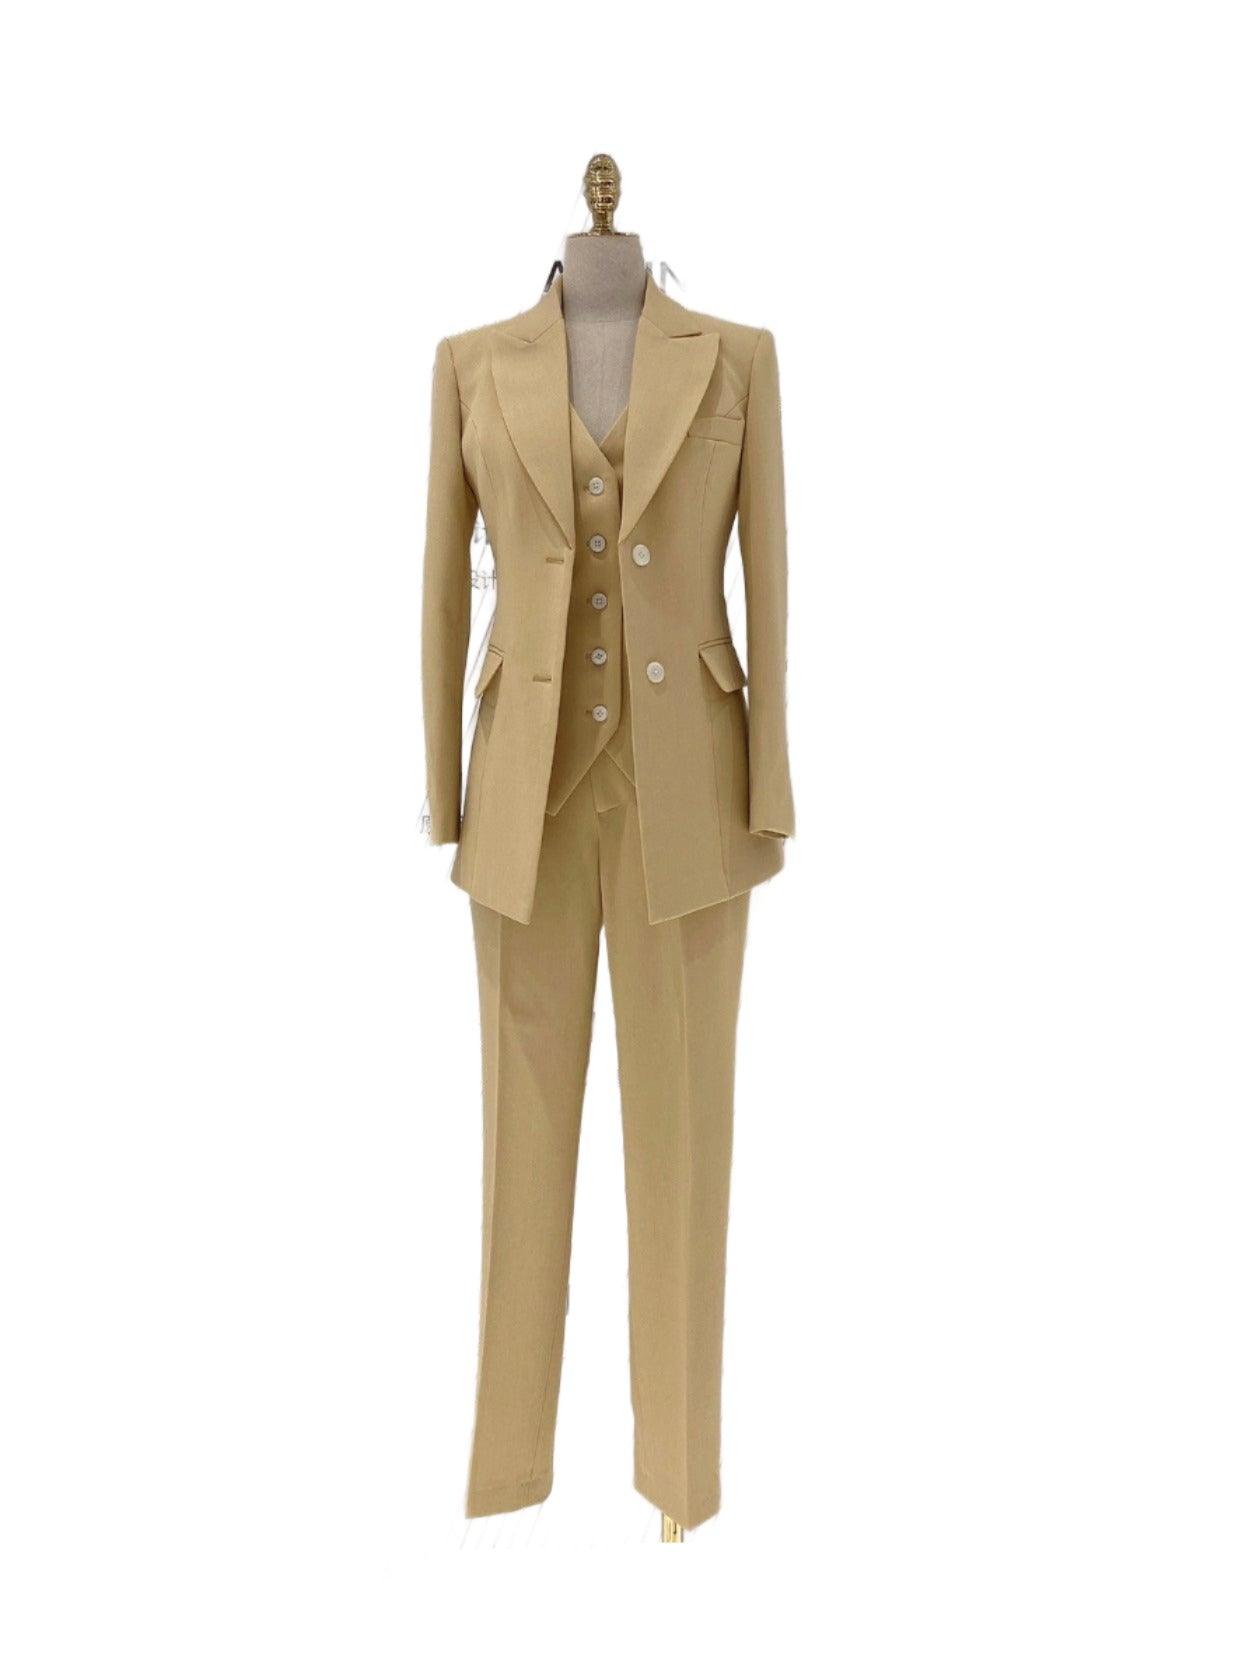 Three Piece Pant Suit - Asymmetrical Vest - Slim Fit Women Trouser Suit - Pantsuit - Guocali